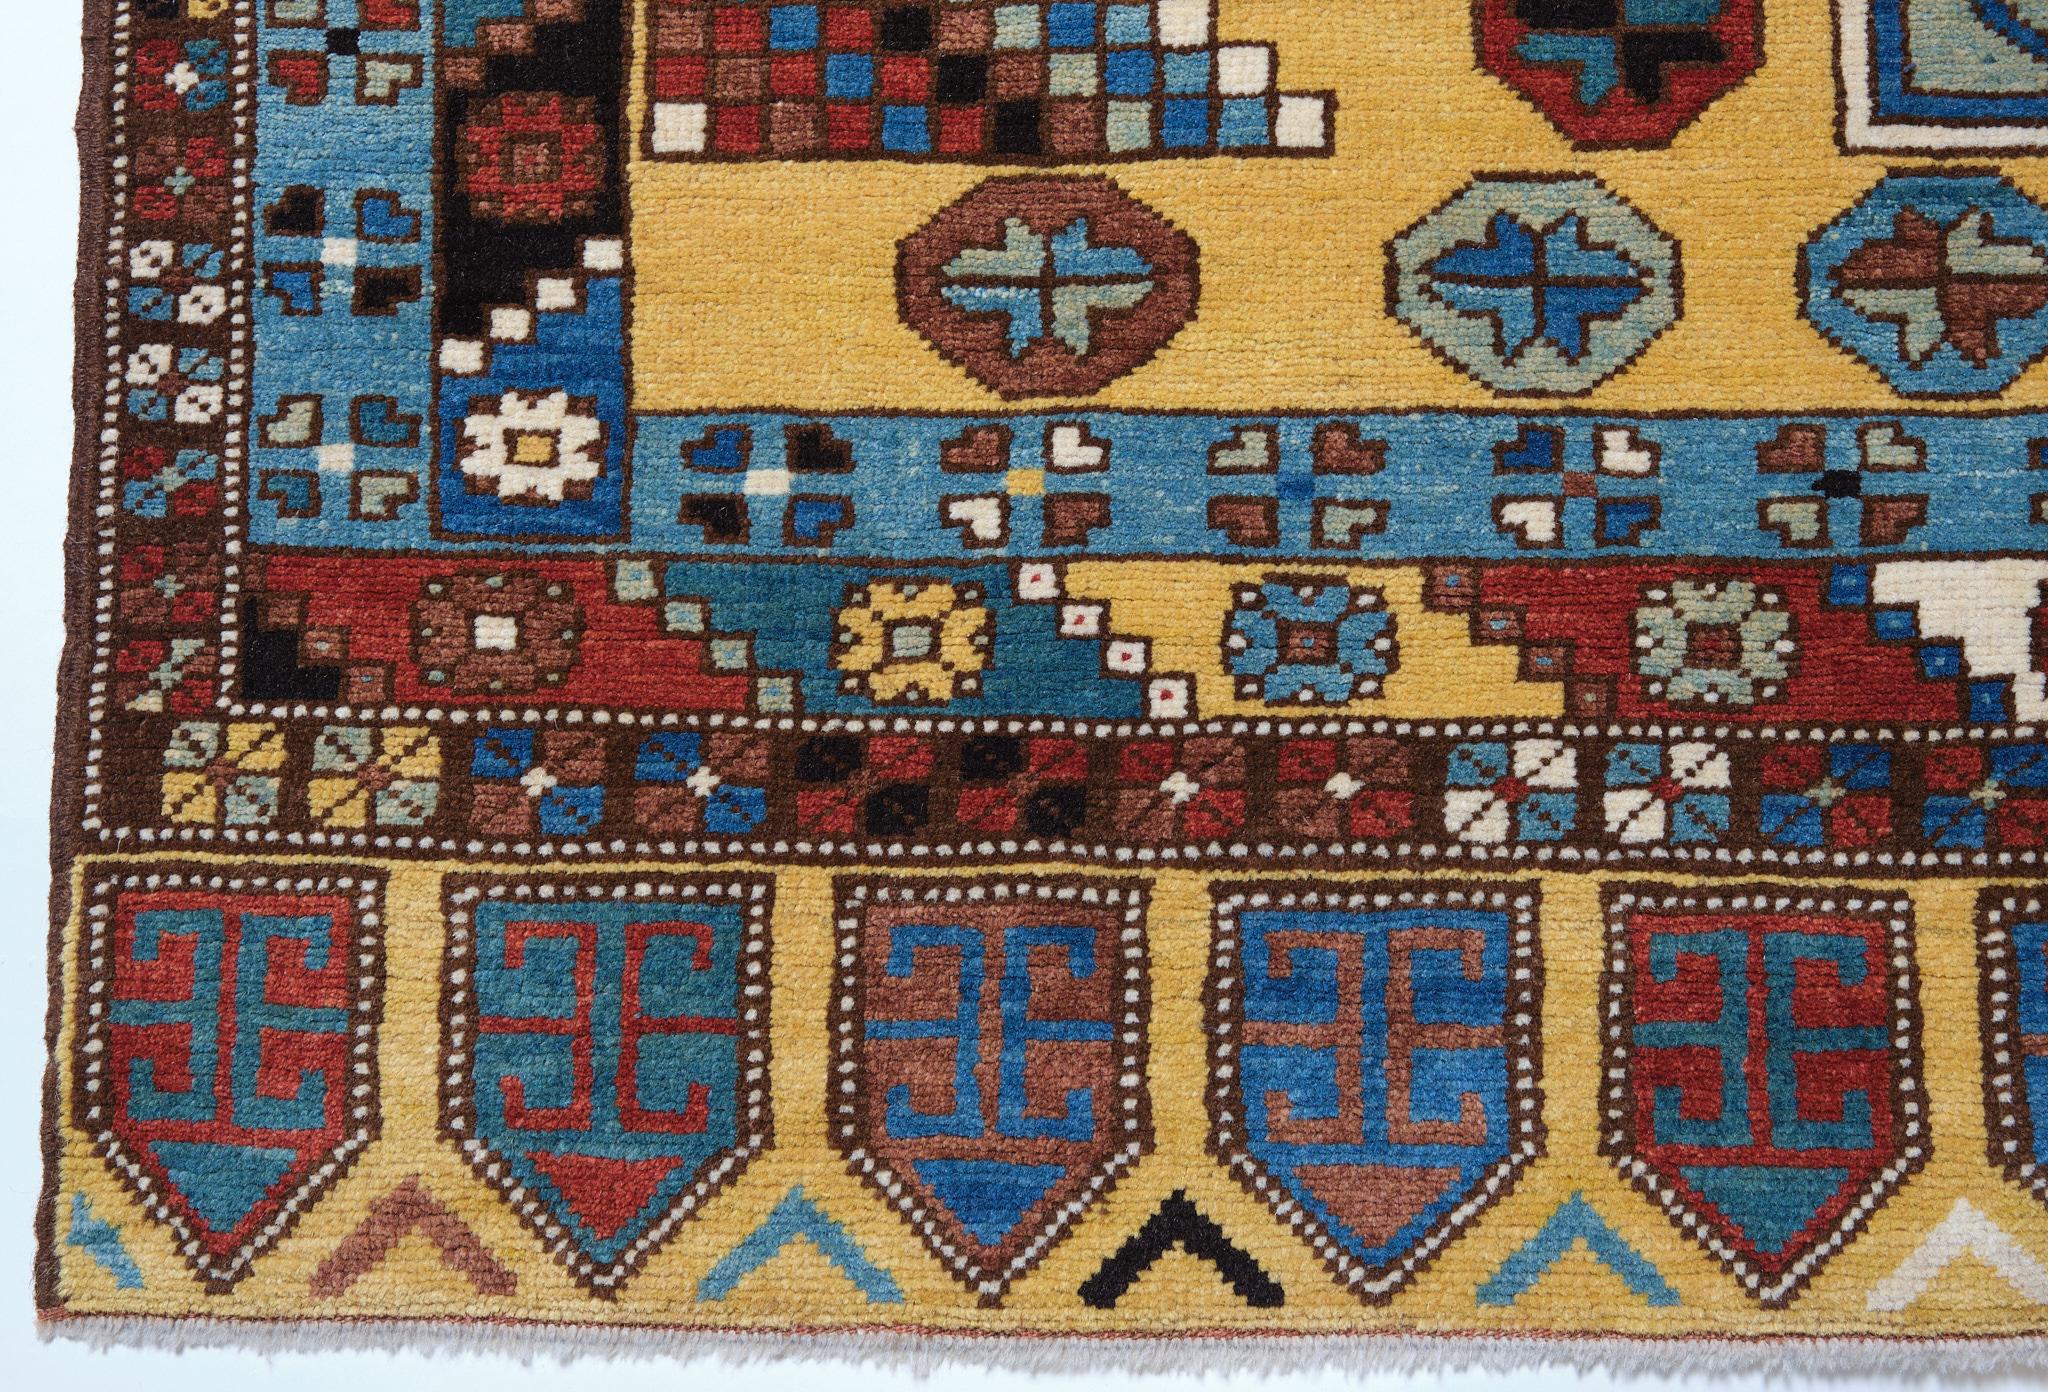 Dies ist ein Doppelmedaillon als Hauptelement des Musters eines Teppichs aus dem 18. Jahrhundert aus der Region Konya, Zentralanatolien in der Türkei. Teppiche dieses Typs mit zwei Medaillons tauchen häufig in Gemälden der venezianischen und der